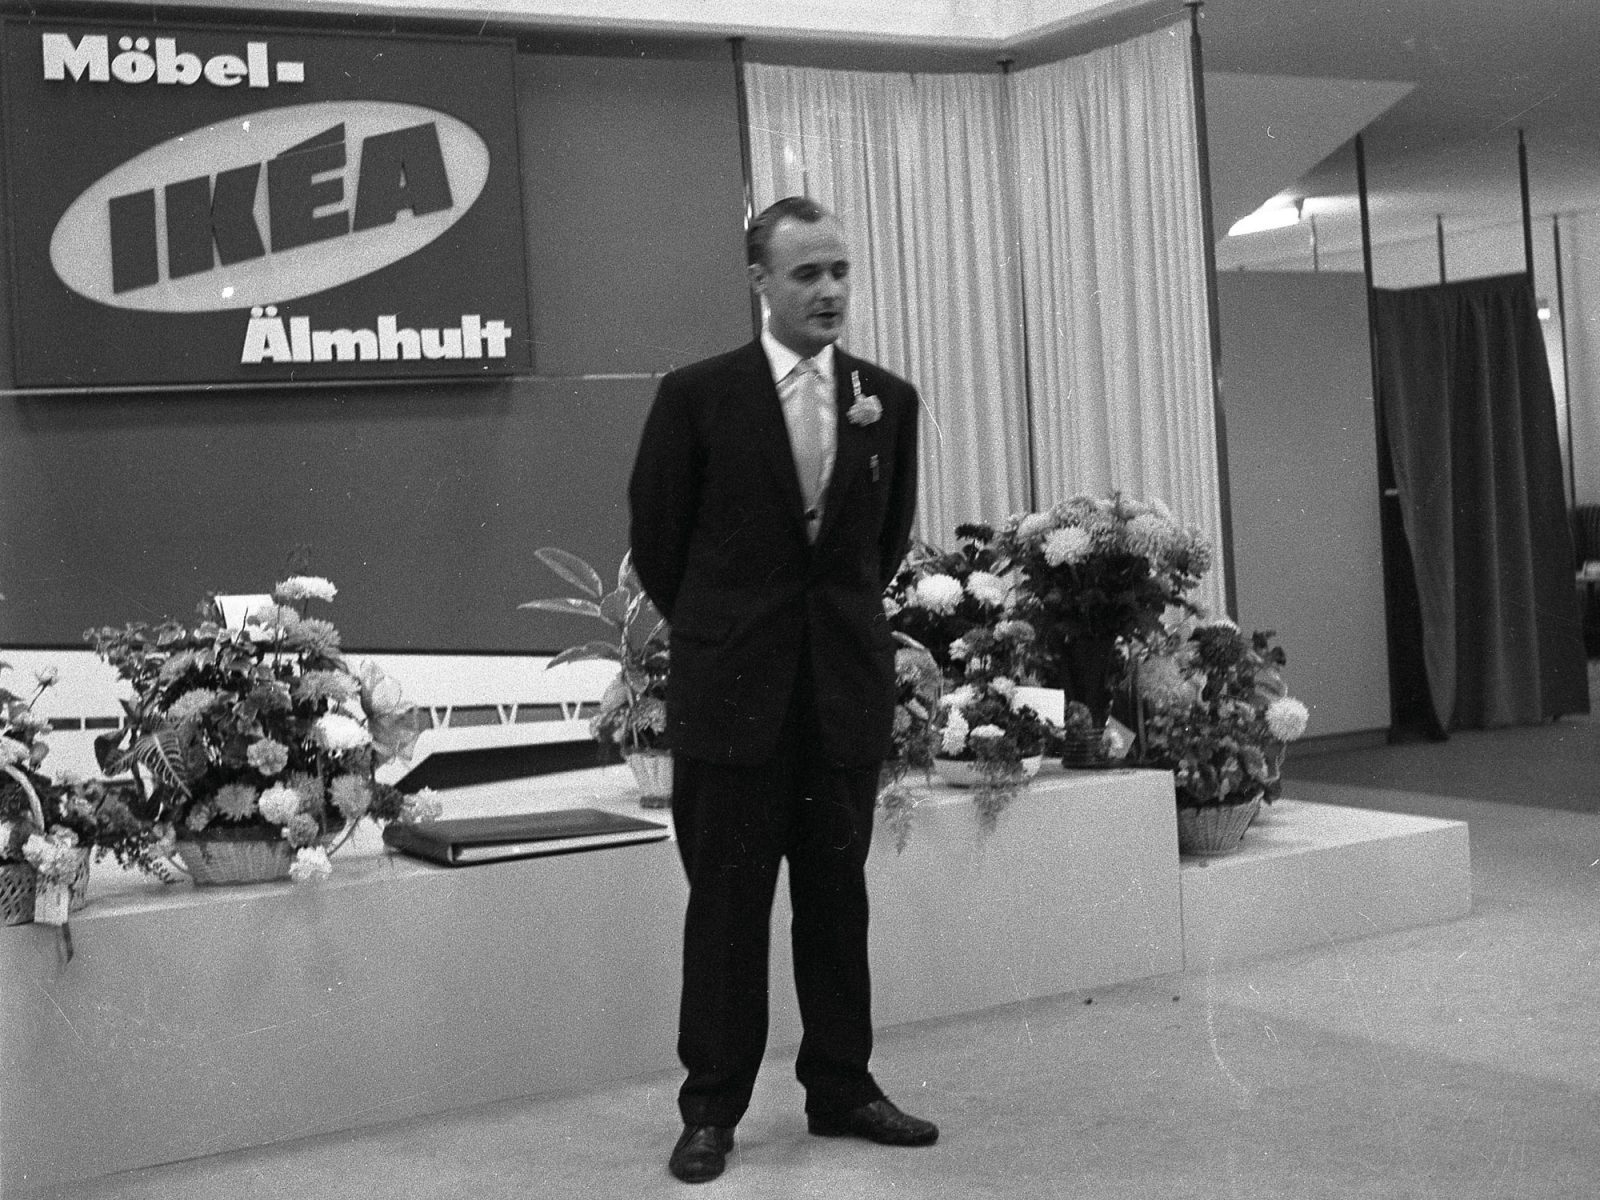 Der junge Ingvar Kamprad hält im dunklen Anzug eine Rede vor einem großen IKEA Schild und vielen Blumen.